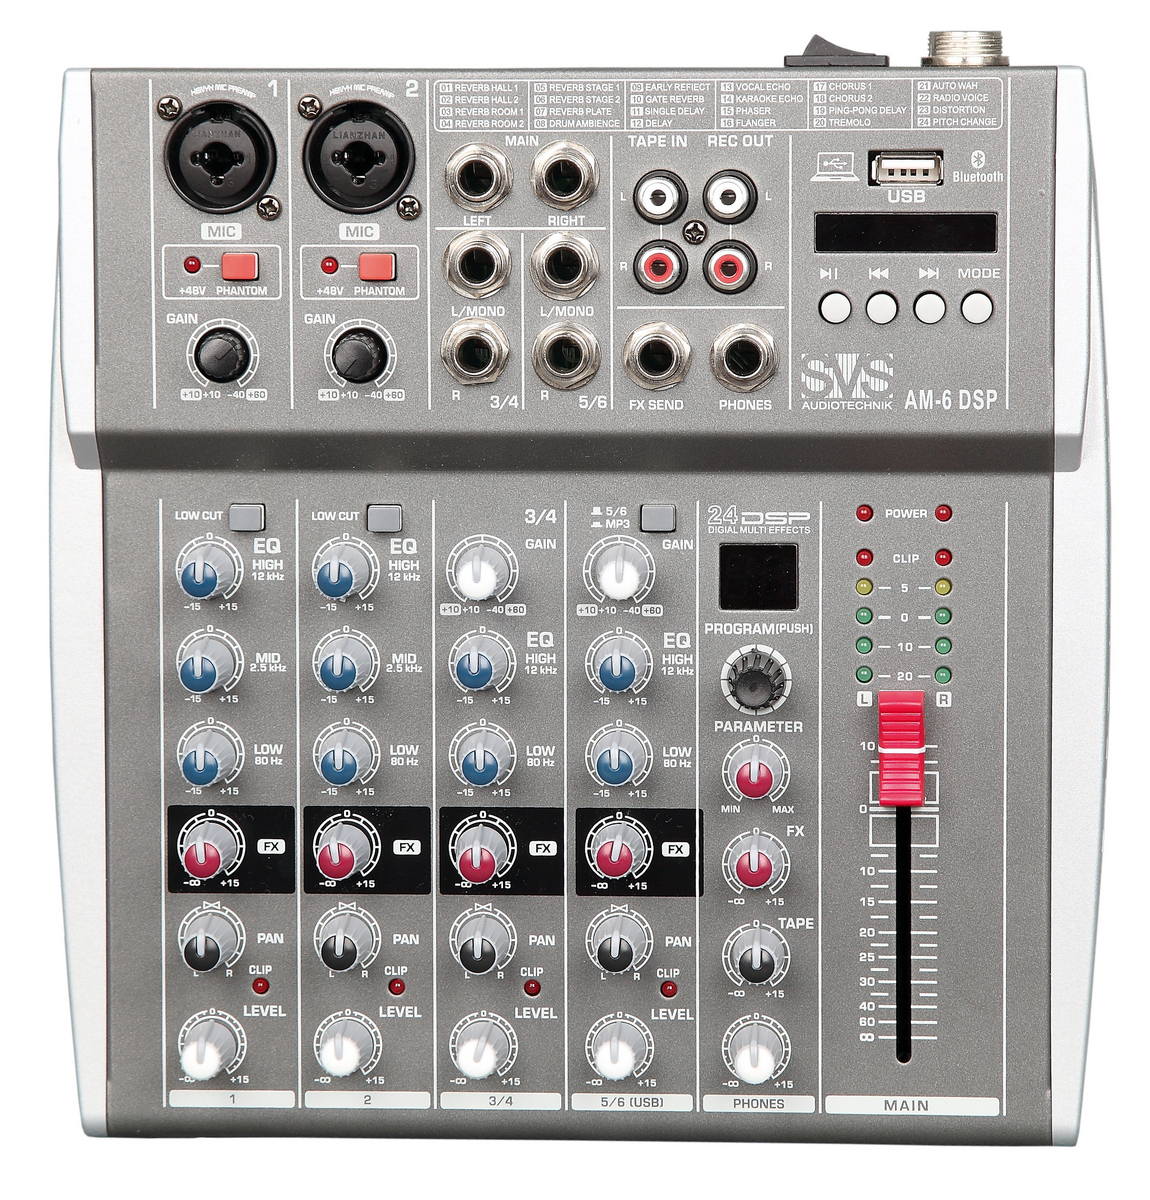 Микшерные пульты аналоговые SVS Audiotechnik mixers AM-6 DSP микшерные пульты аналоговые svs audiotechnik mixers am 8 dsp